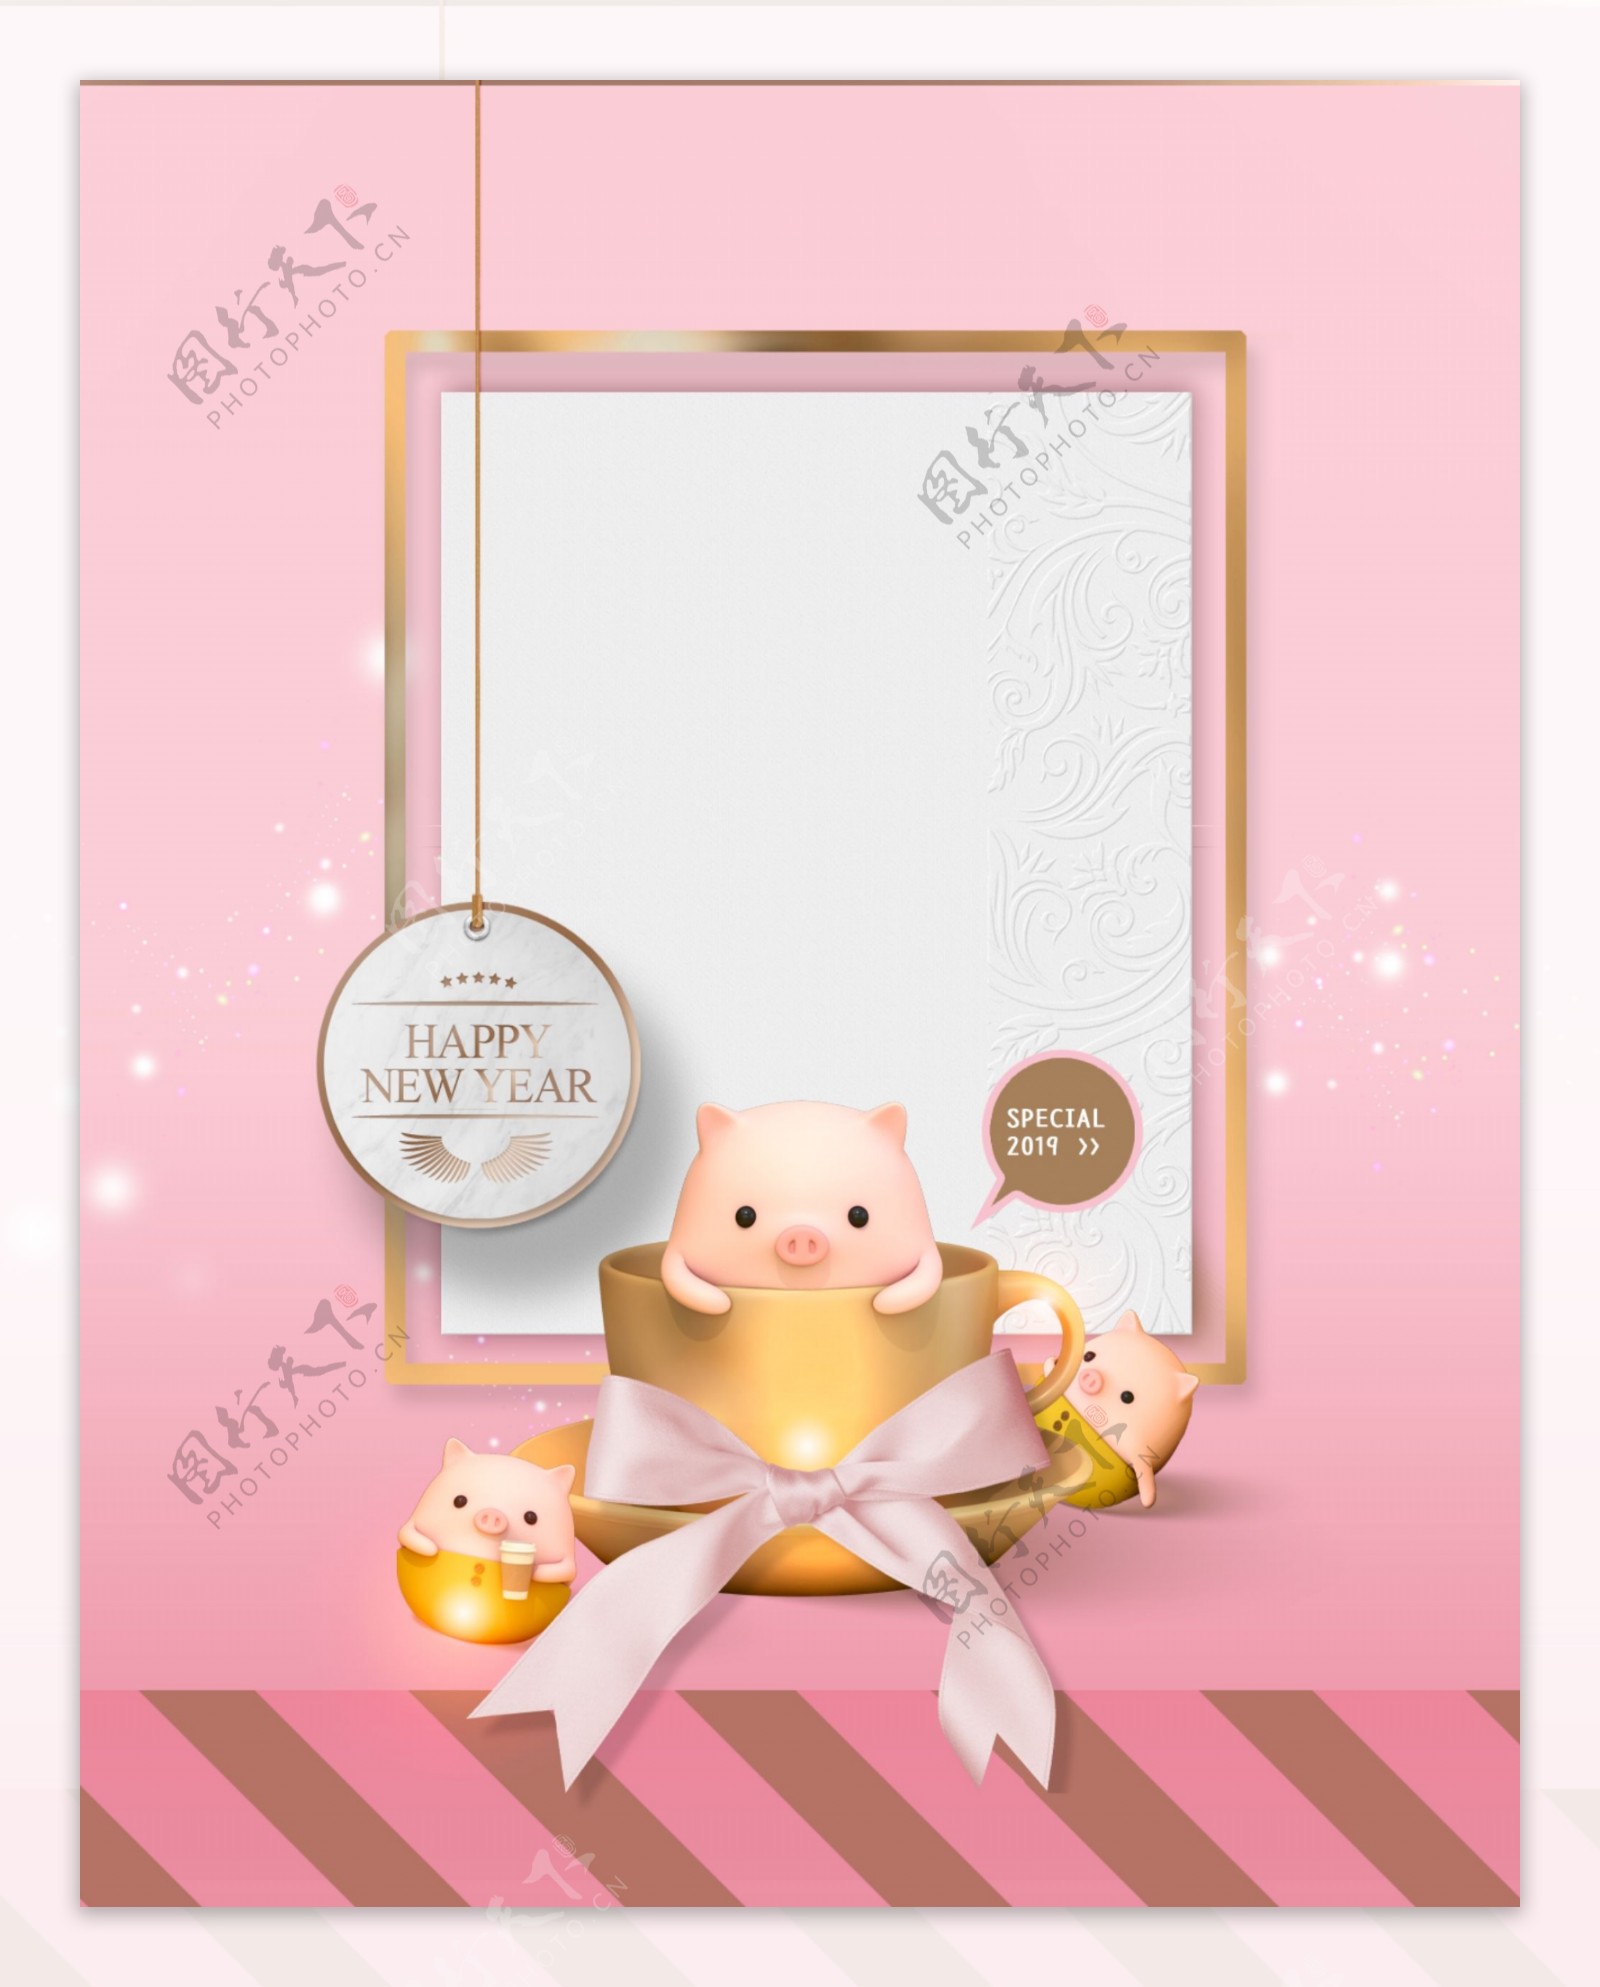 温馨粉色猪年贺卡背景设计